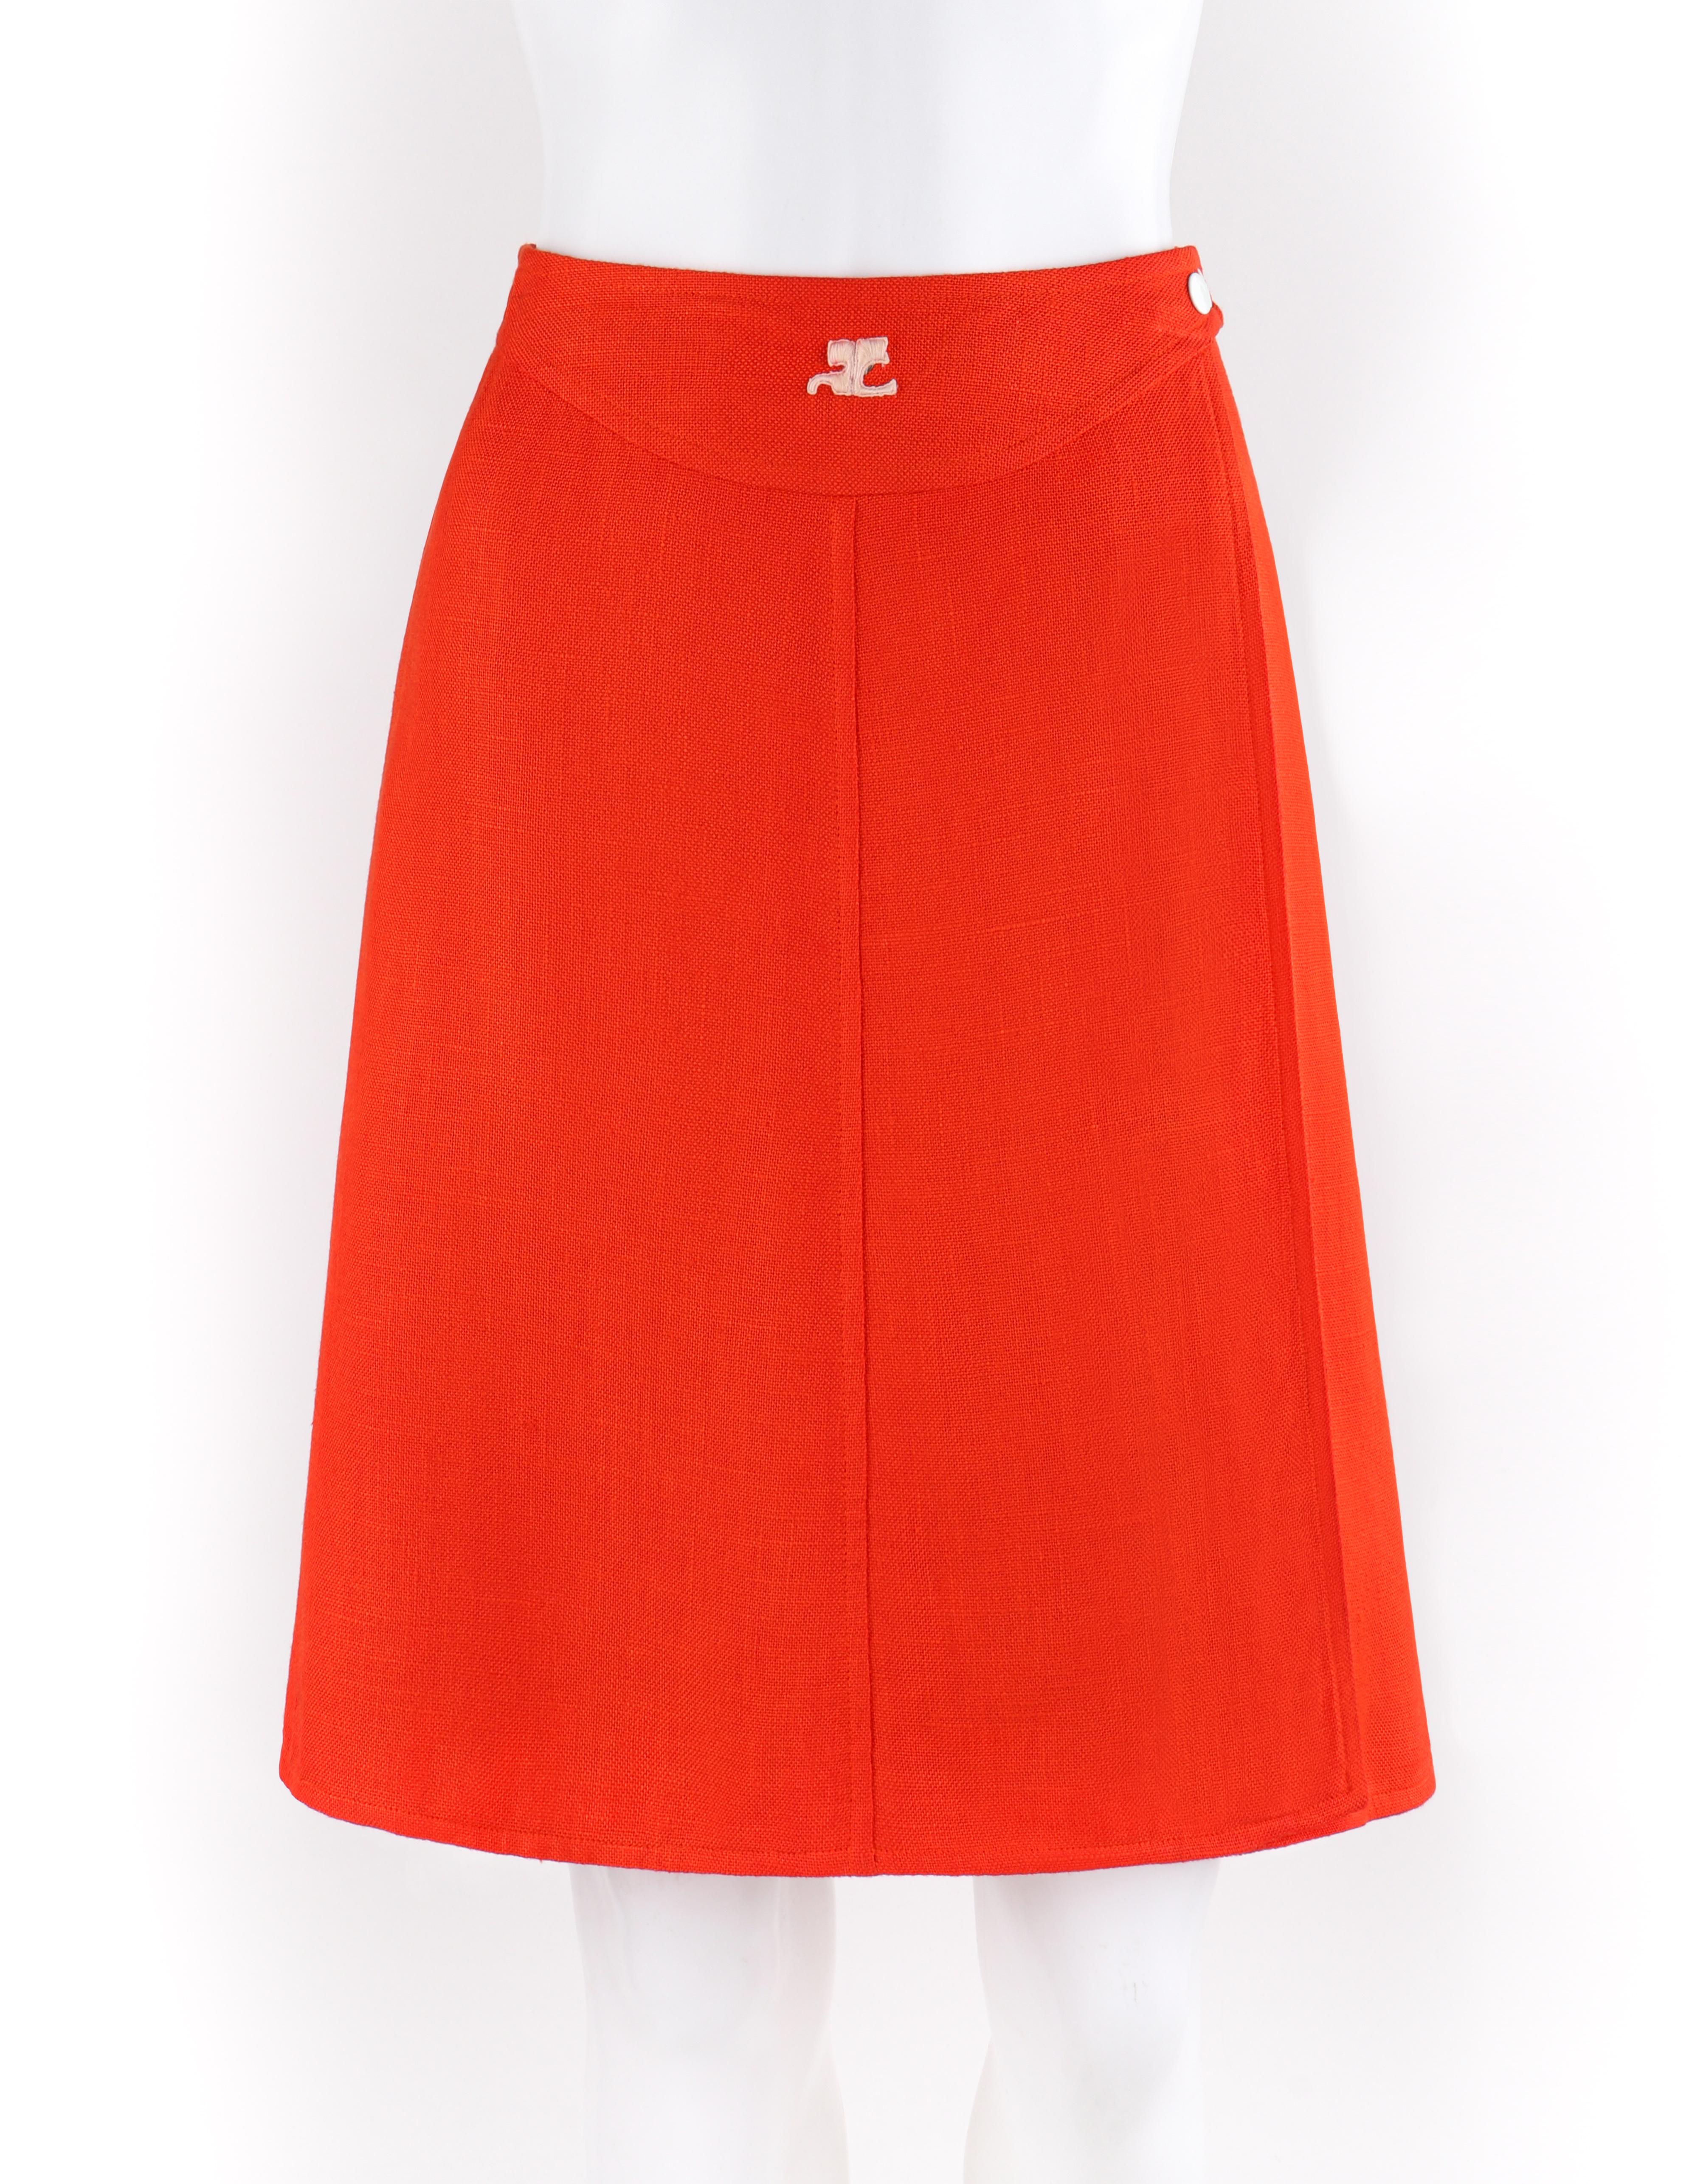 COURREGES c.1960’s Orange White Signature Logo Snap Button Up A-Line Wrap Skirt
Circa: 1960’s
Label(s): Courreges Paris
Designer: Andre Courreges
Style: A-line wrap skirt
Color(s): Orange, white
Lined: Yes
Marked Fabric Content: Shell: “100%